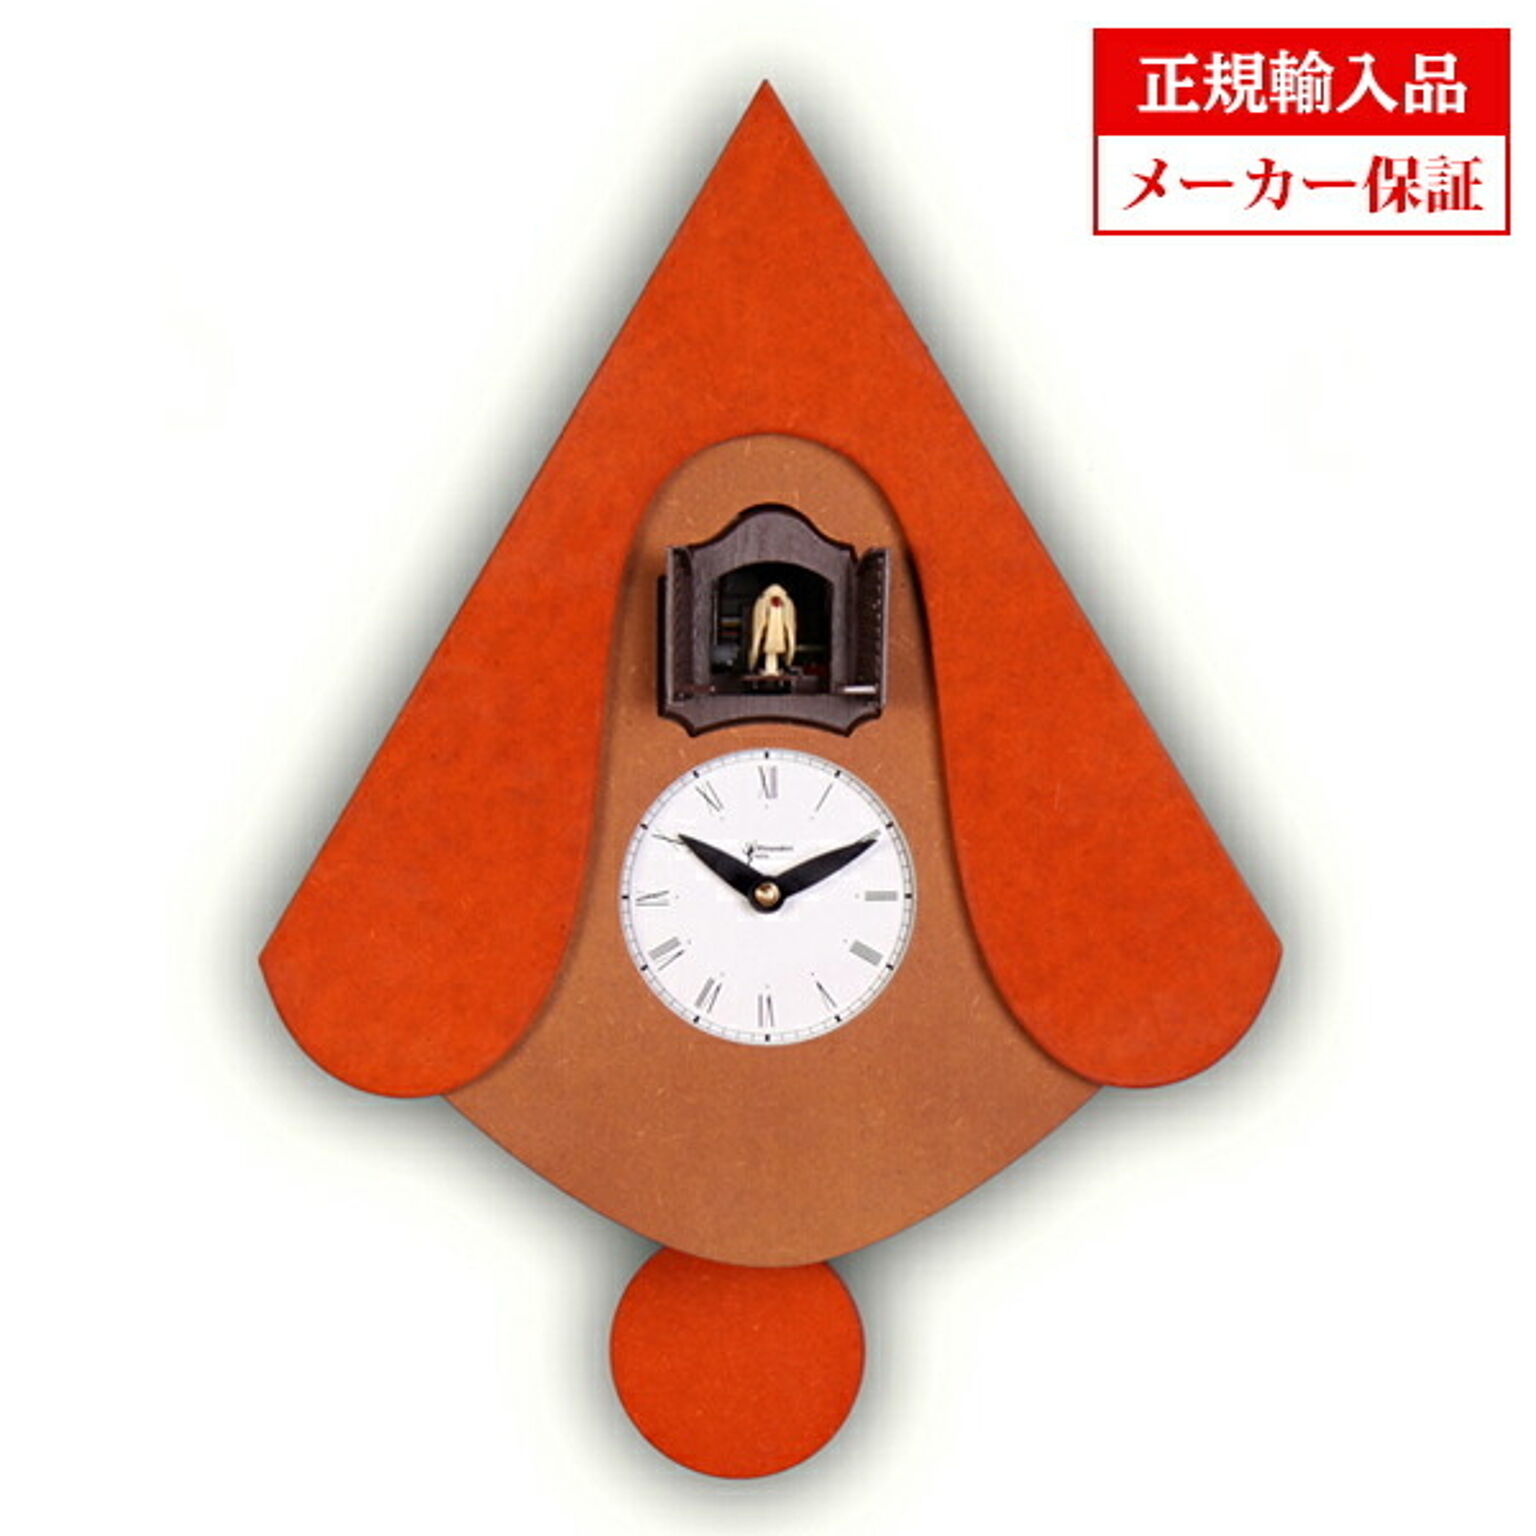 【正規輸入品】 イタリア ピロンディーニ 105B Pirondini 木製鳩時計 New W オレンジ